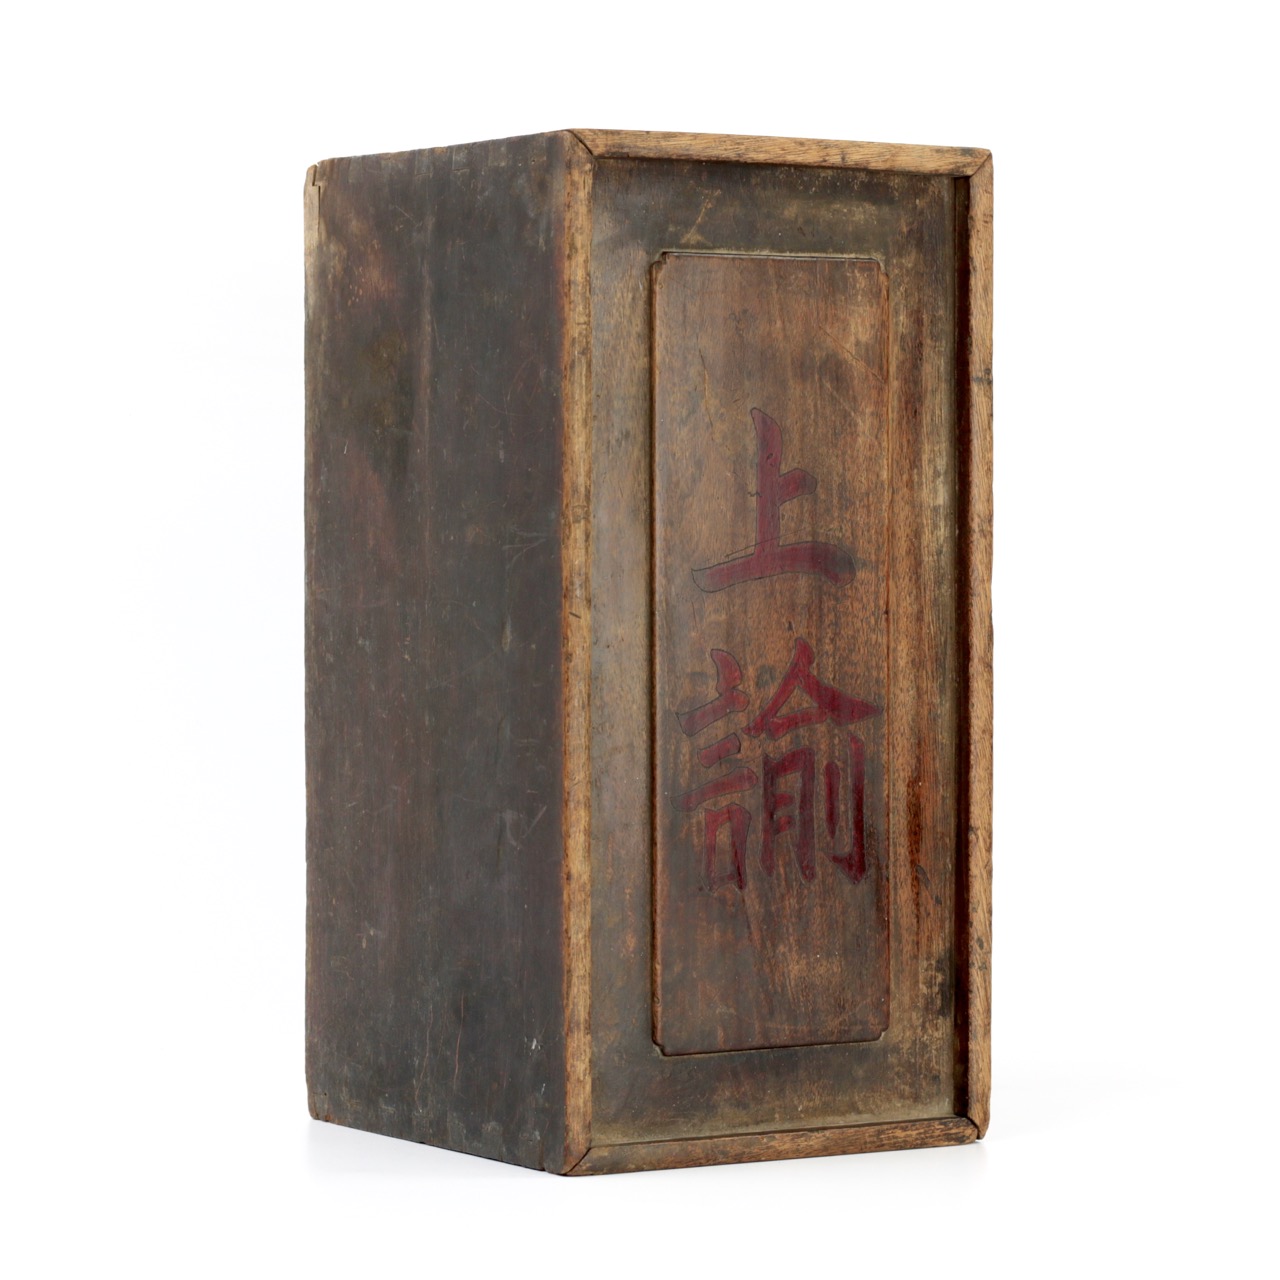 Qing edict box